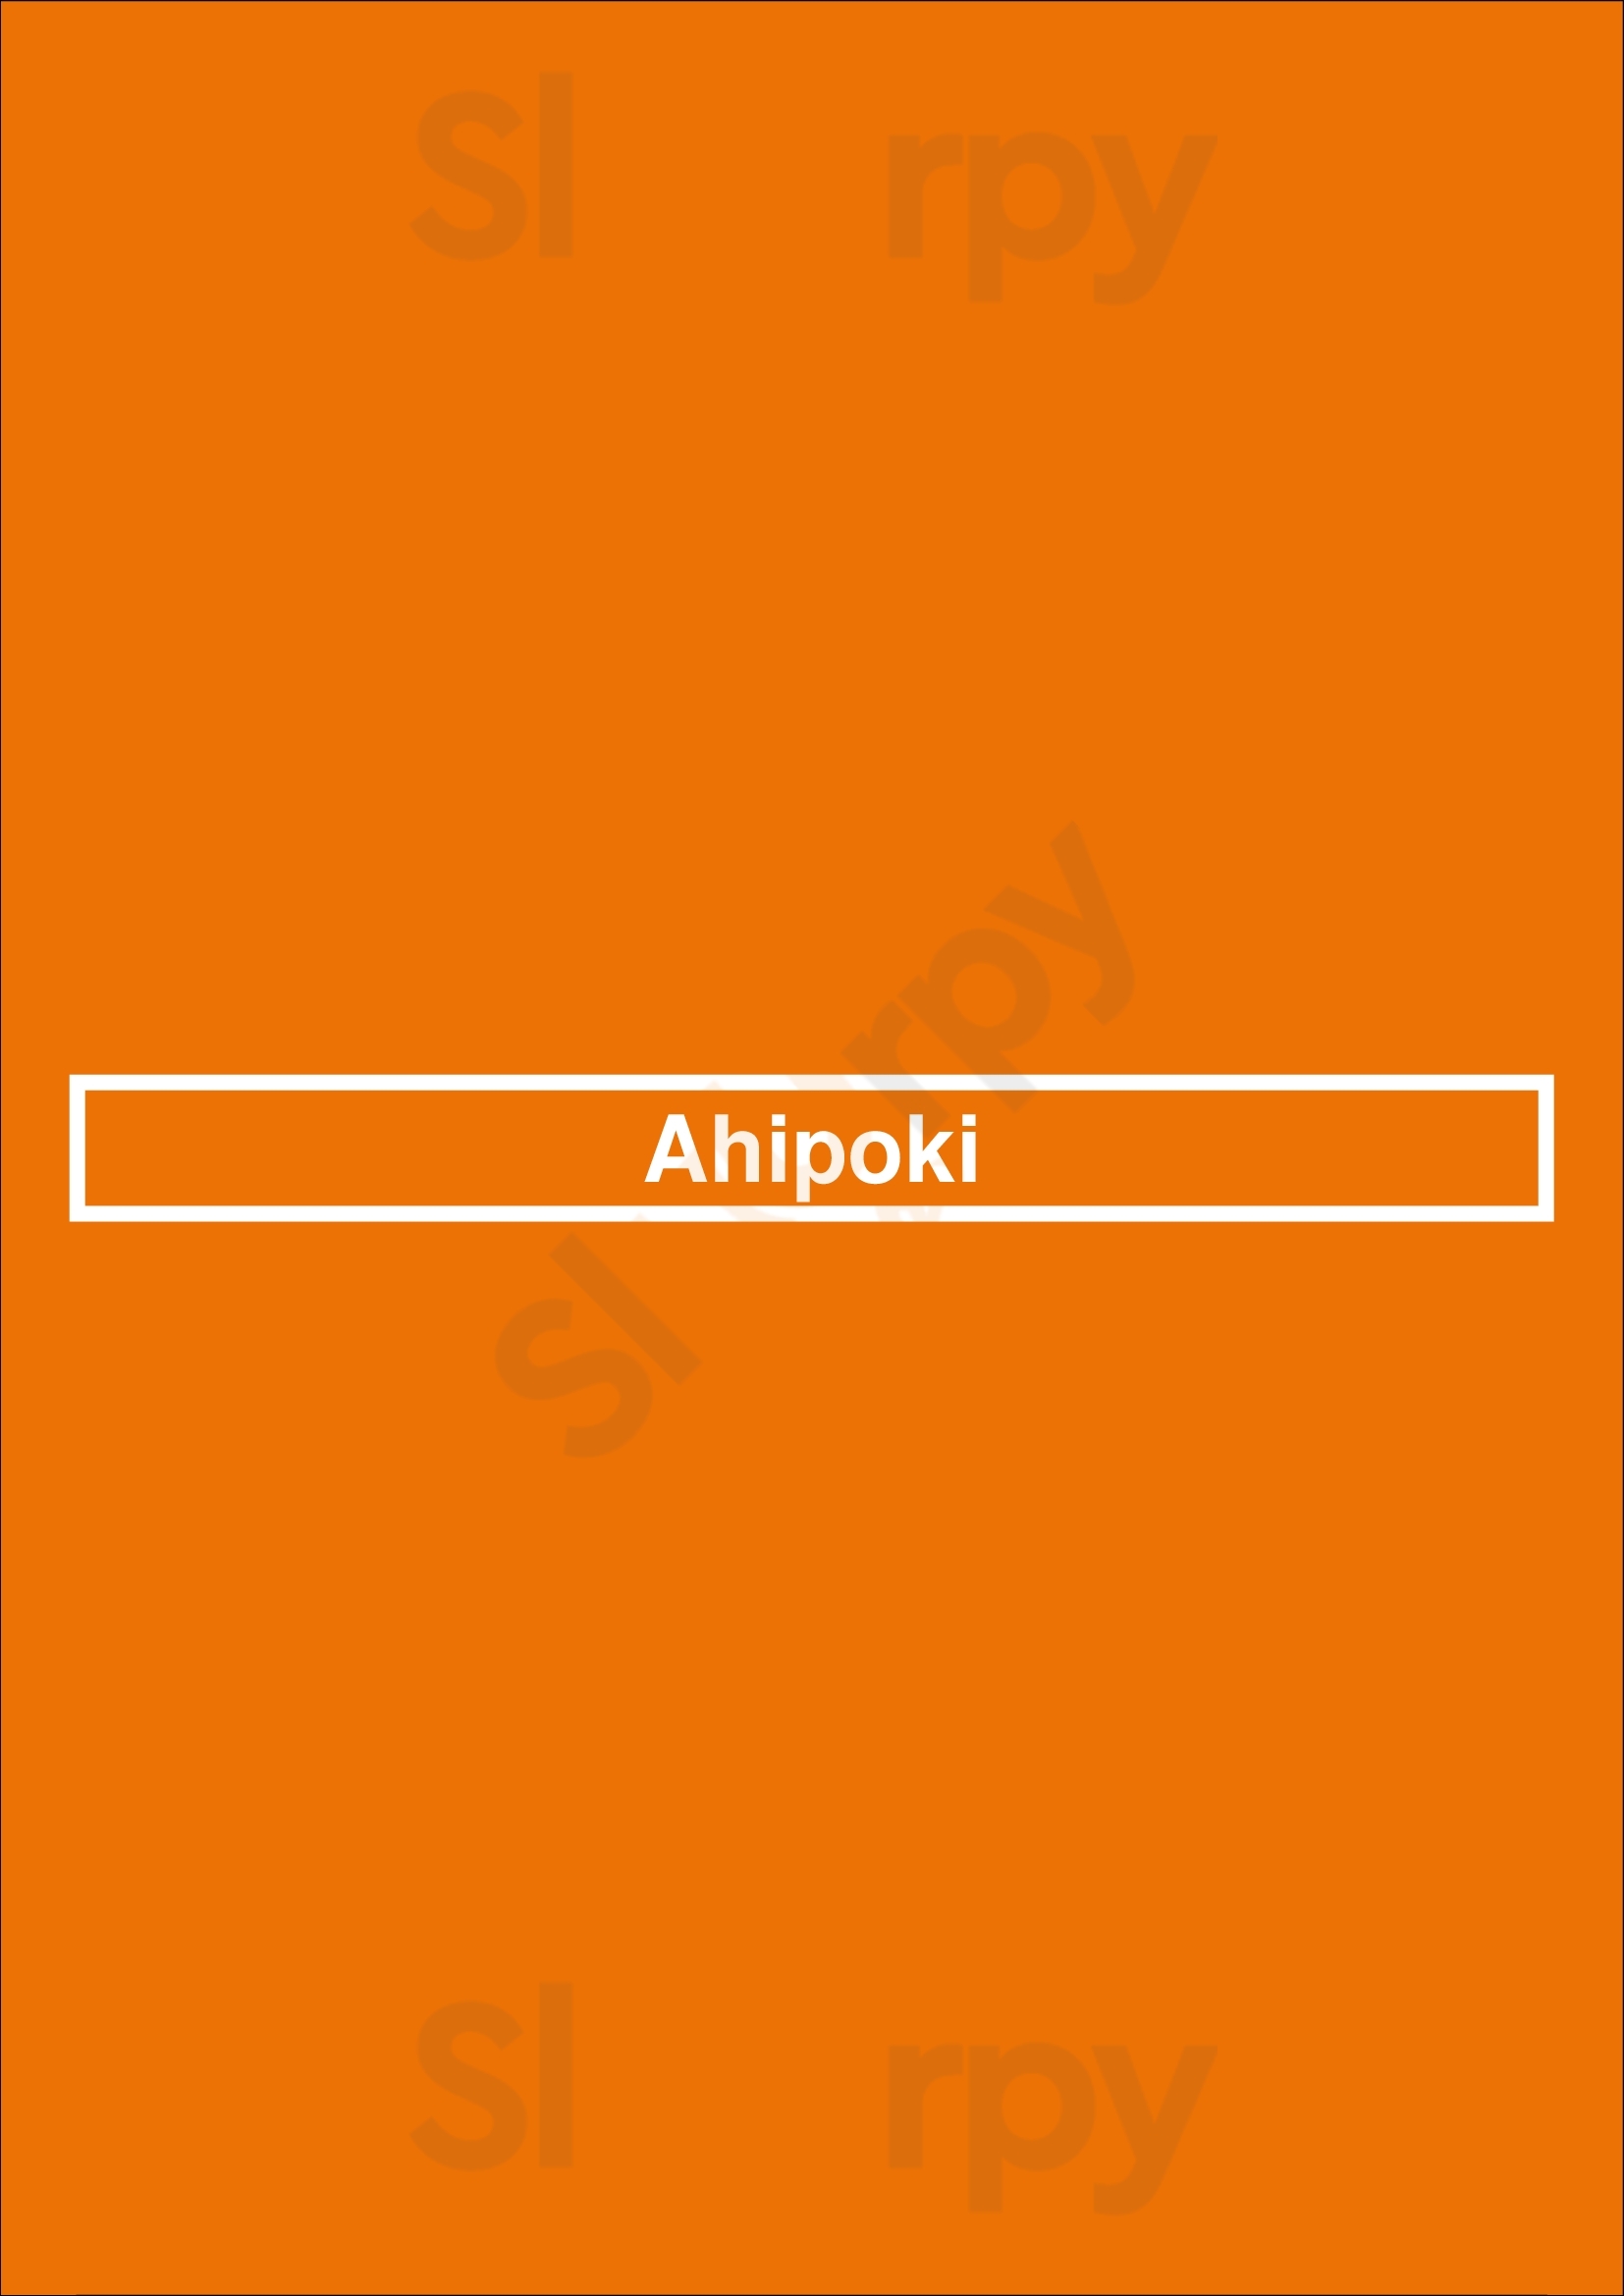 Ahipoki Phoenix Menu - 1